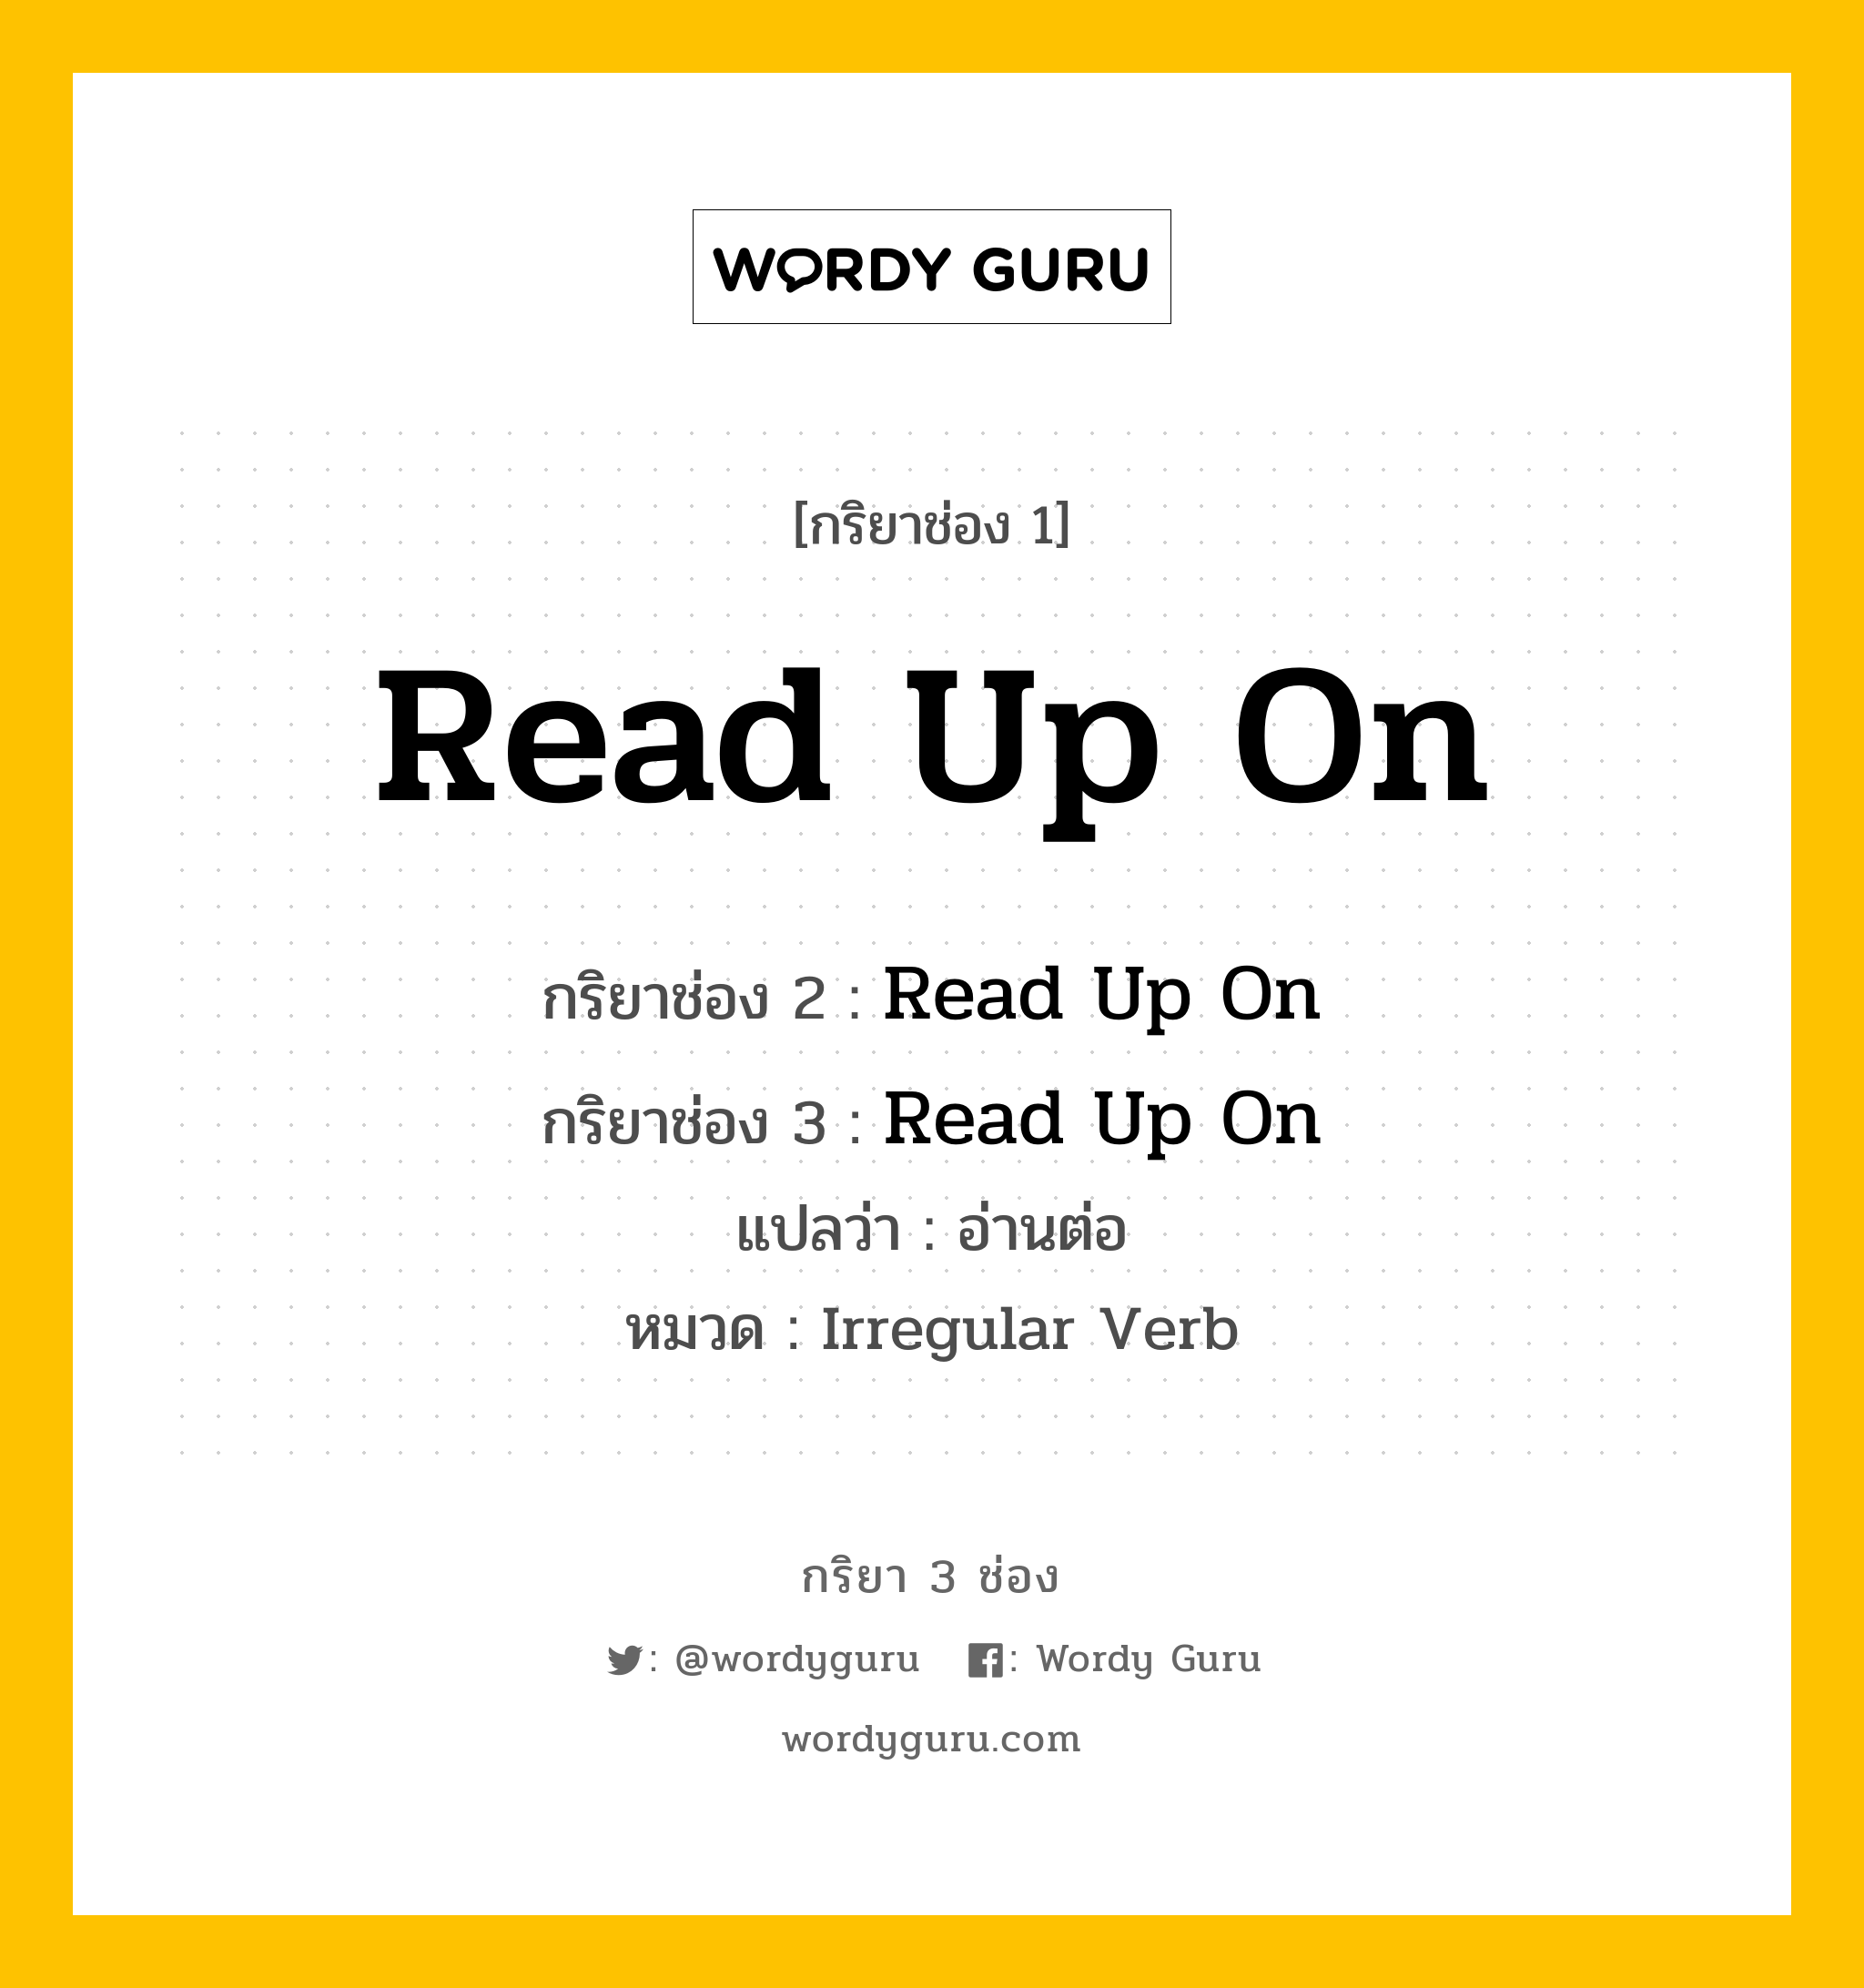 กริยา 3 ช่อง: Read Up On ช่อง 2 Read Up On ช่อง 3 คืออะไร, กริยาช่อง 1 Read Up On กริยาช่อง 2 Read Up On กริยาช่อง 3 Read Up On แปลว่า อ่านต่อ หมวด Irregular Verb หมวด Irregular Verb